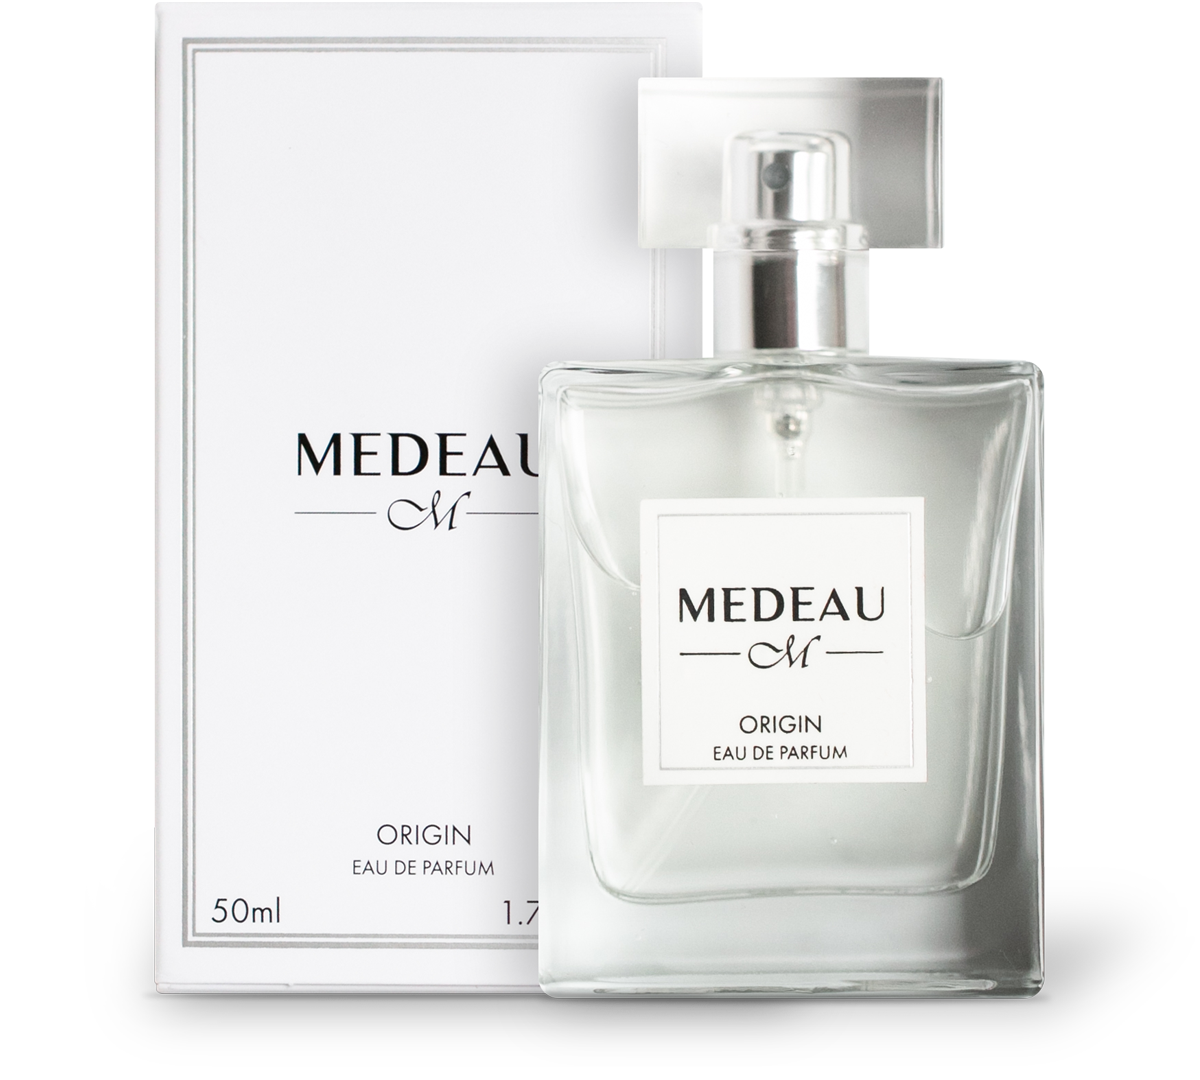 Luxus Parfum Medeau Origin Eau de Parfum 50ml Thiemann